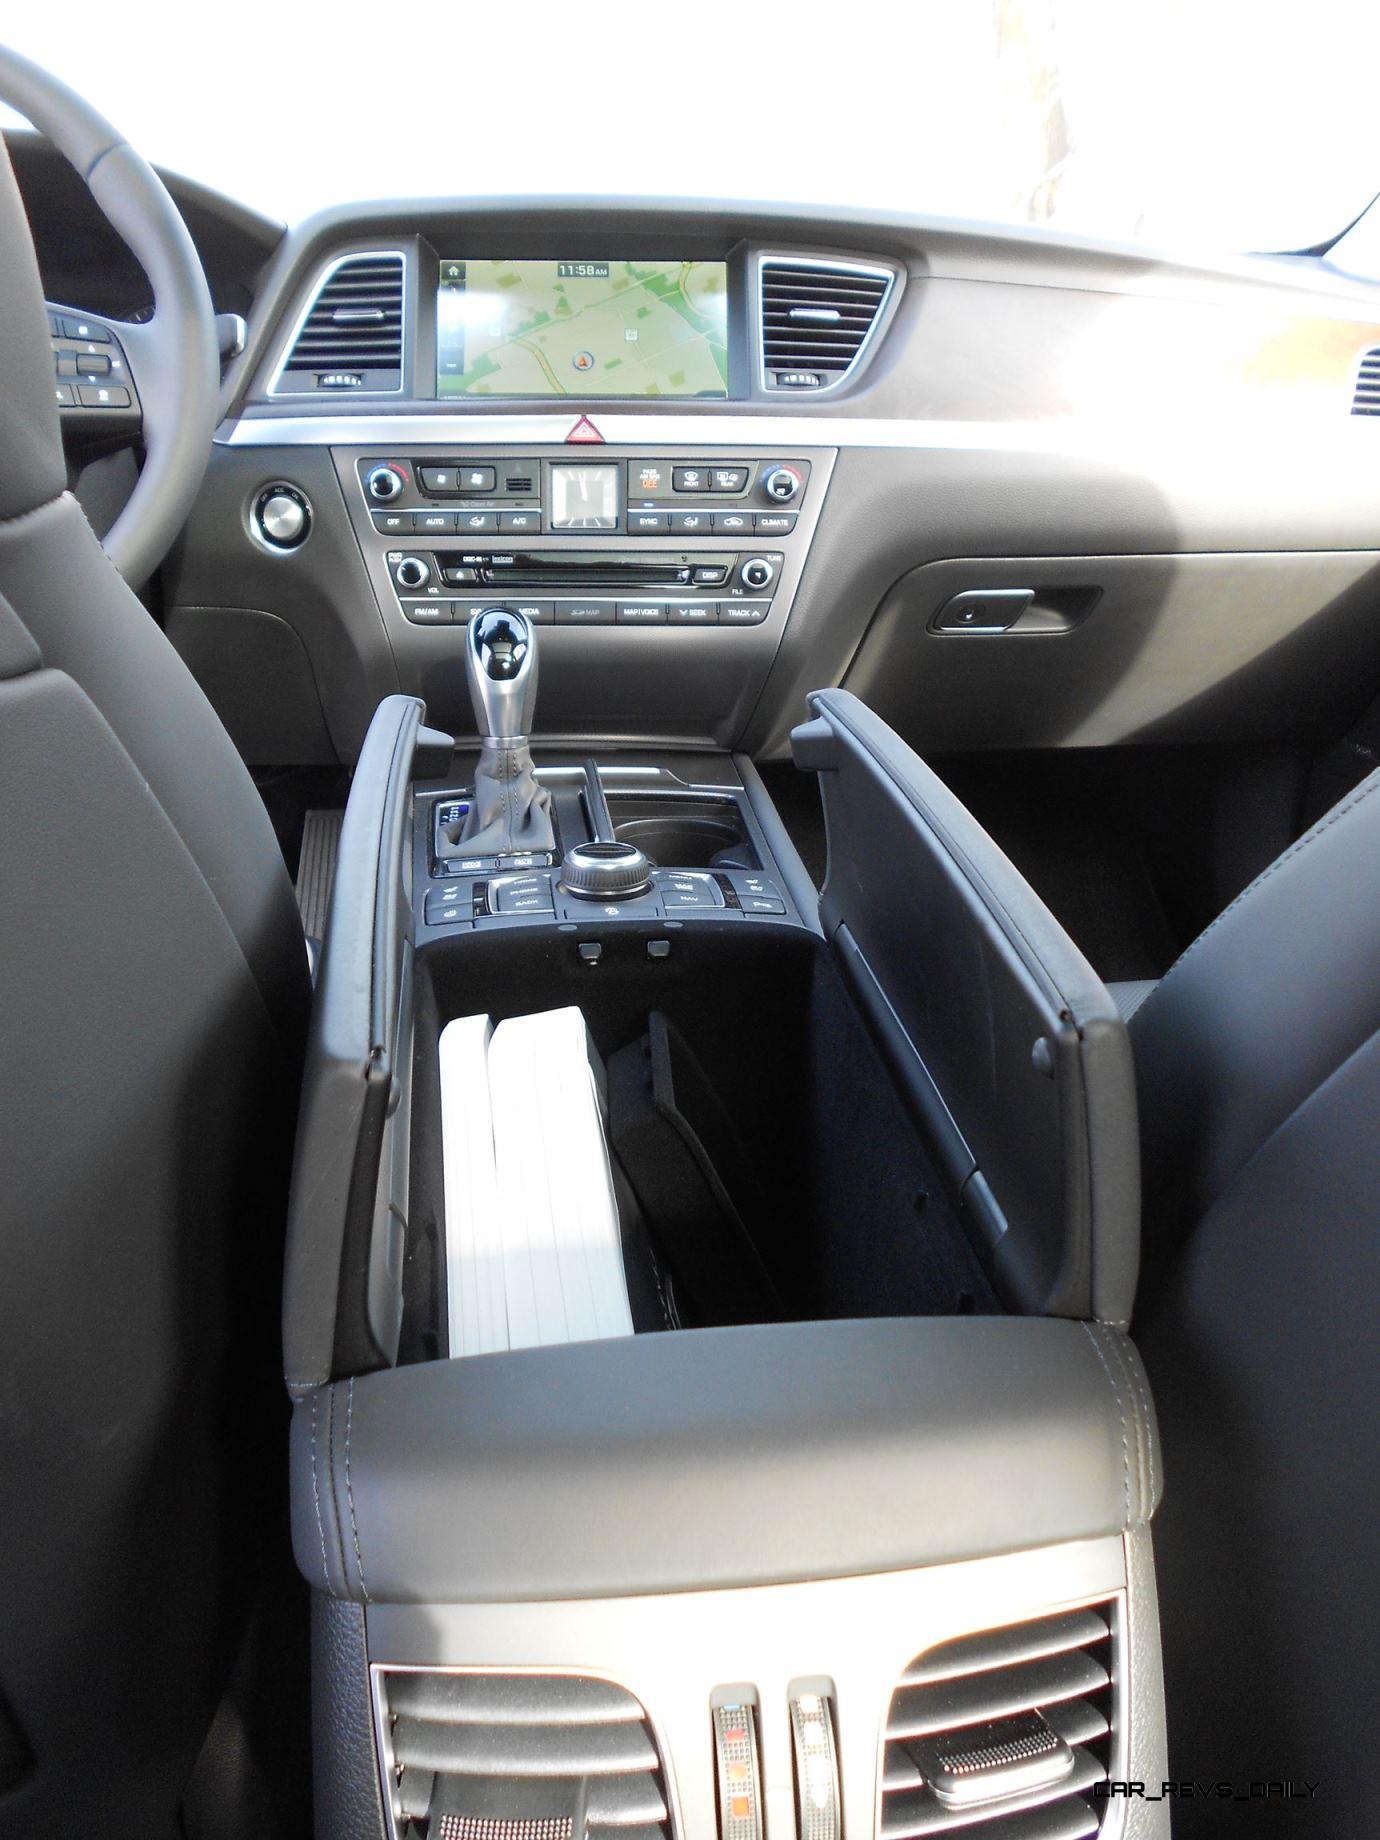 2016 Hyundai Genesis Awd 3 8 Review Interior 7